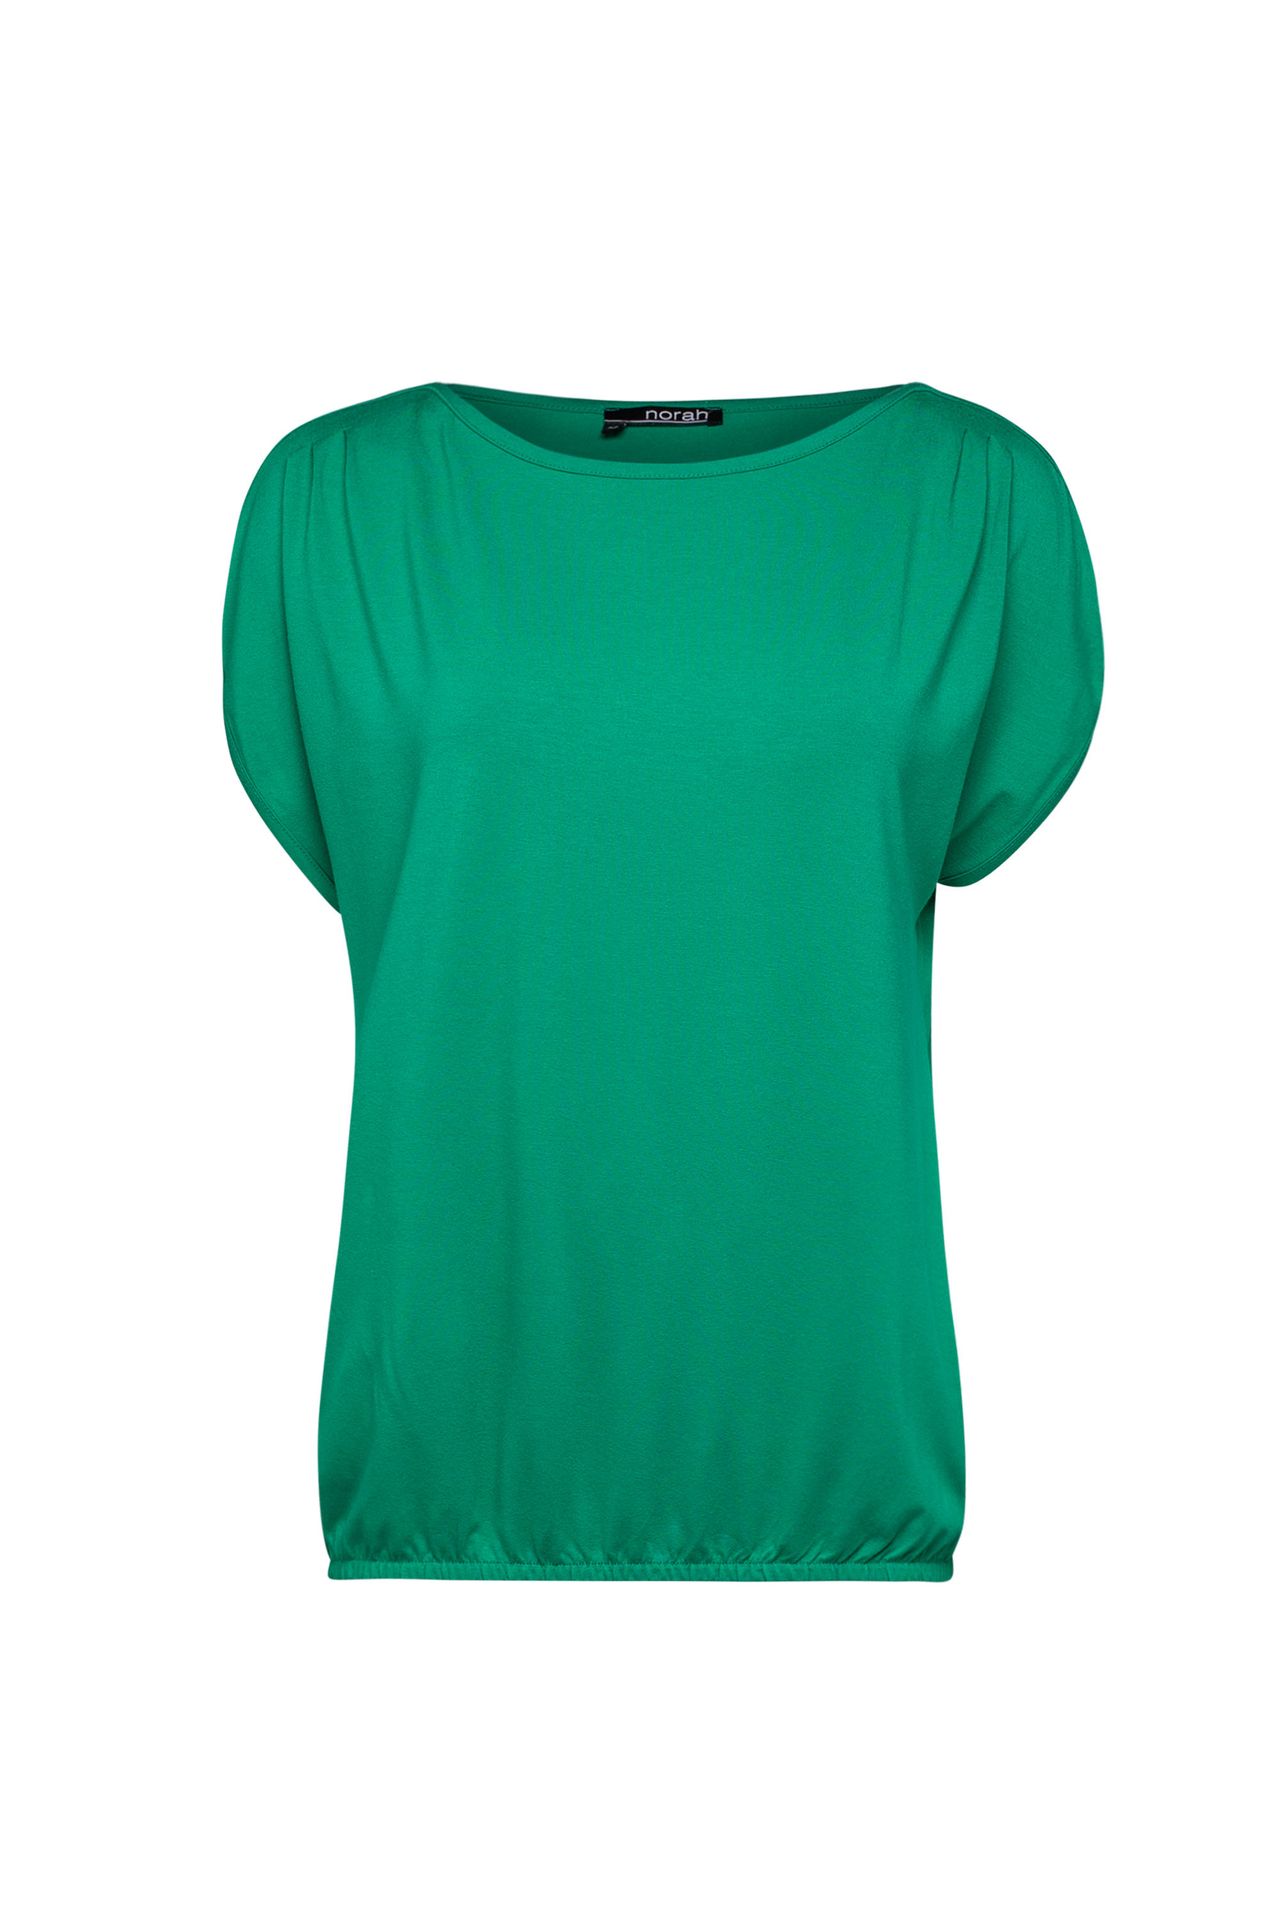  Shirt groen green 212806-500